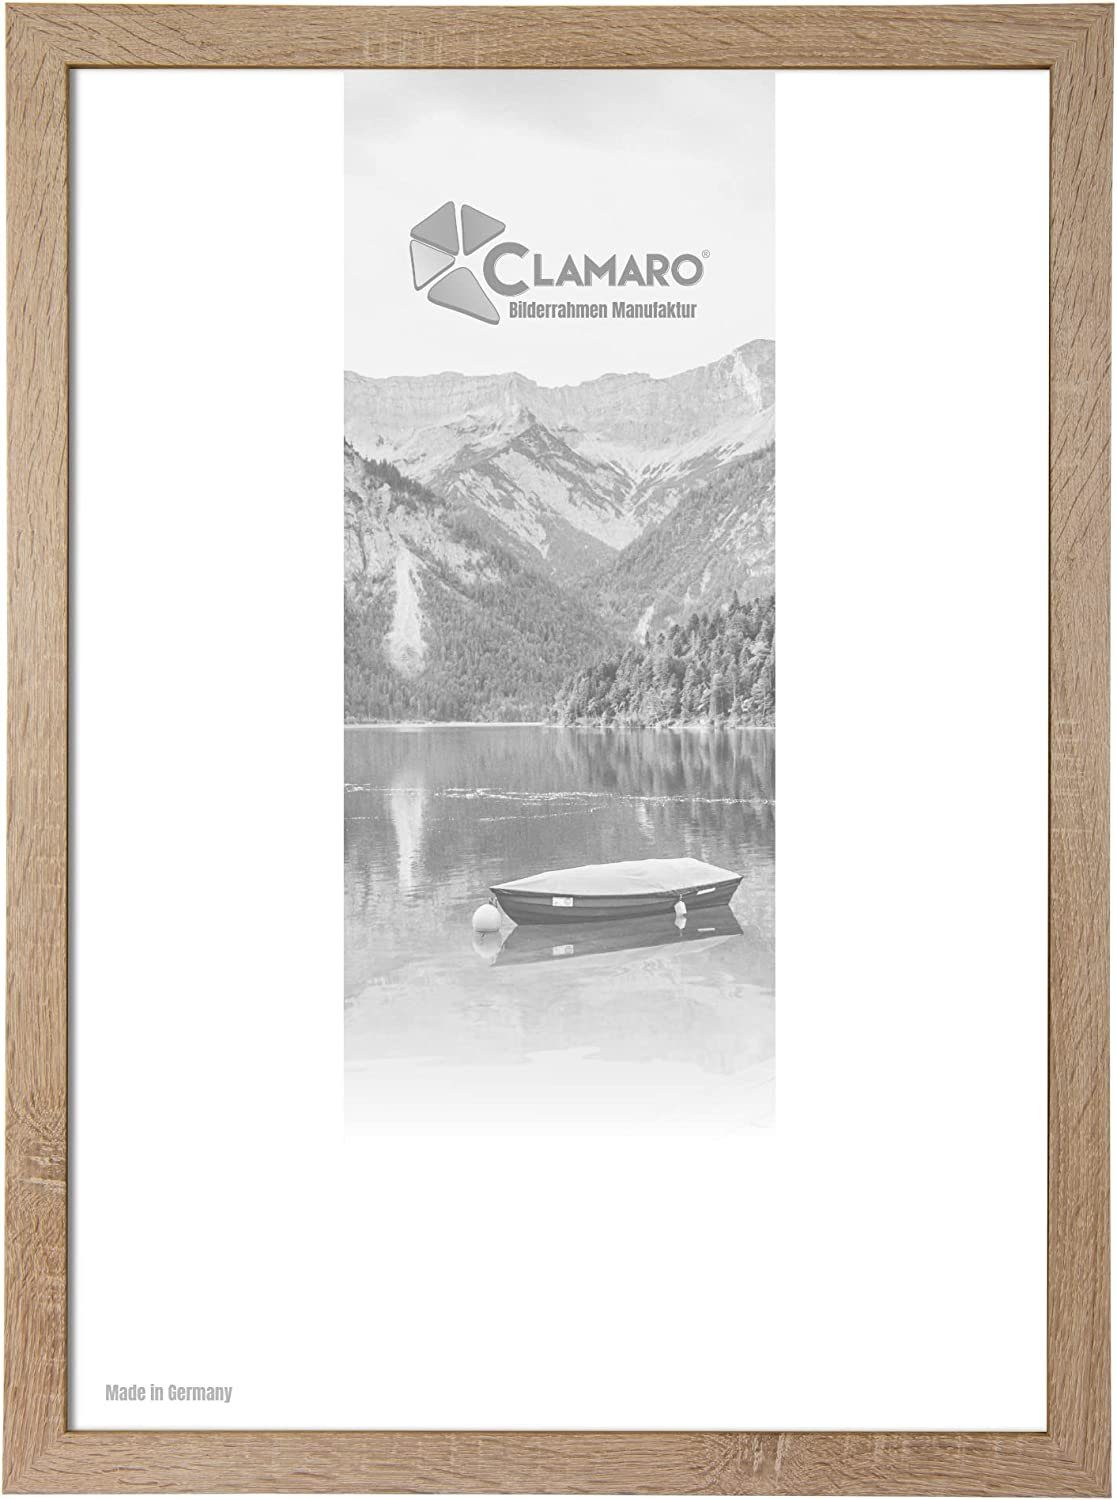 Clamaro Bilderrahmen Bilderrahmen Eiche Sonoma CLAMARO Collage nach Maß FSC® Holz Modern eckig M3016 22x28 in Eiche Sonoma